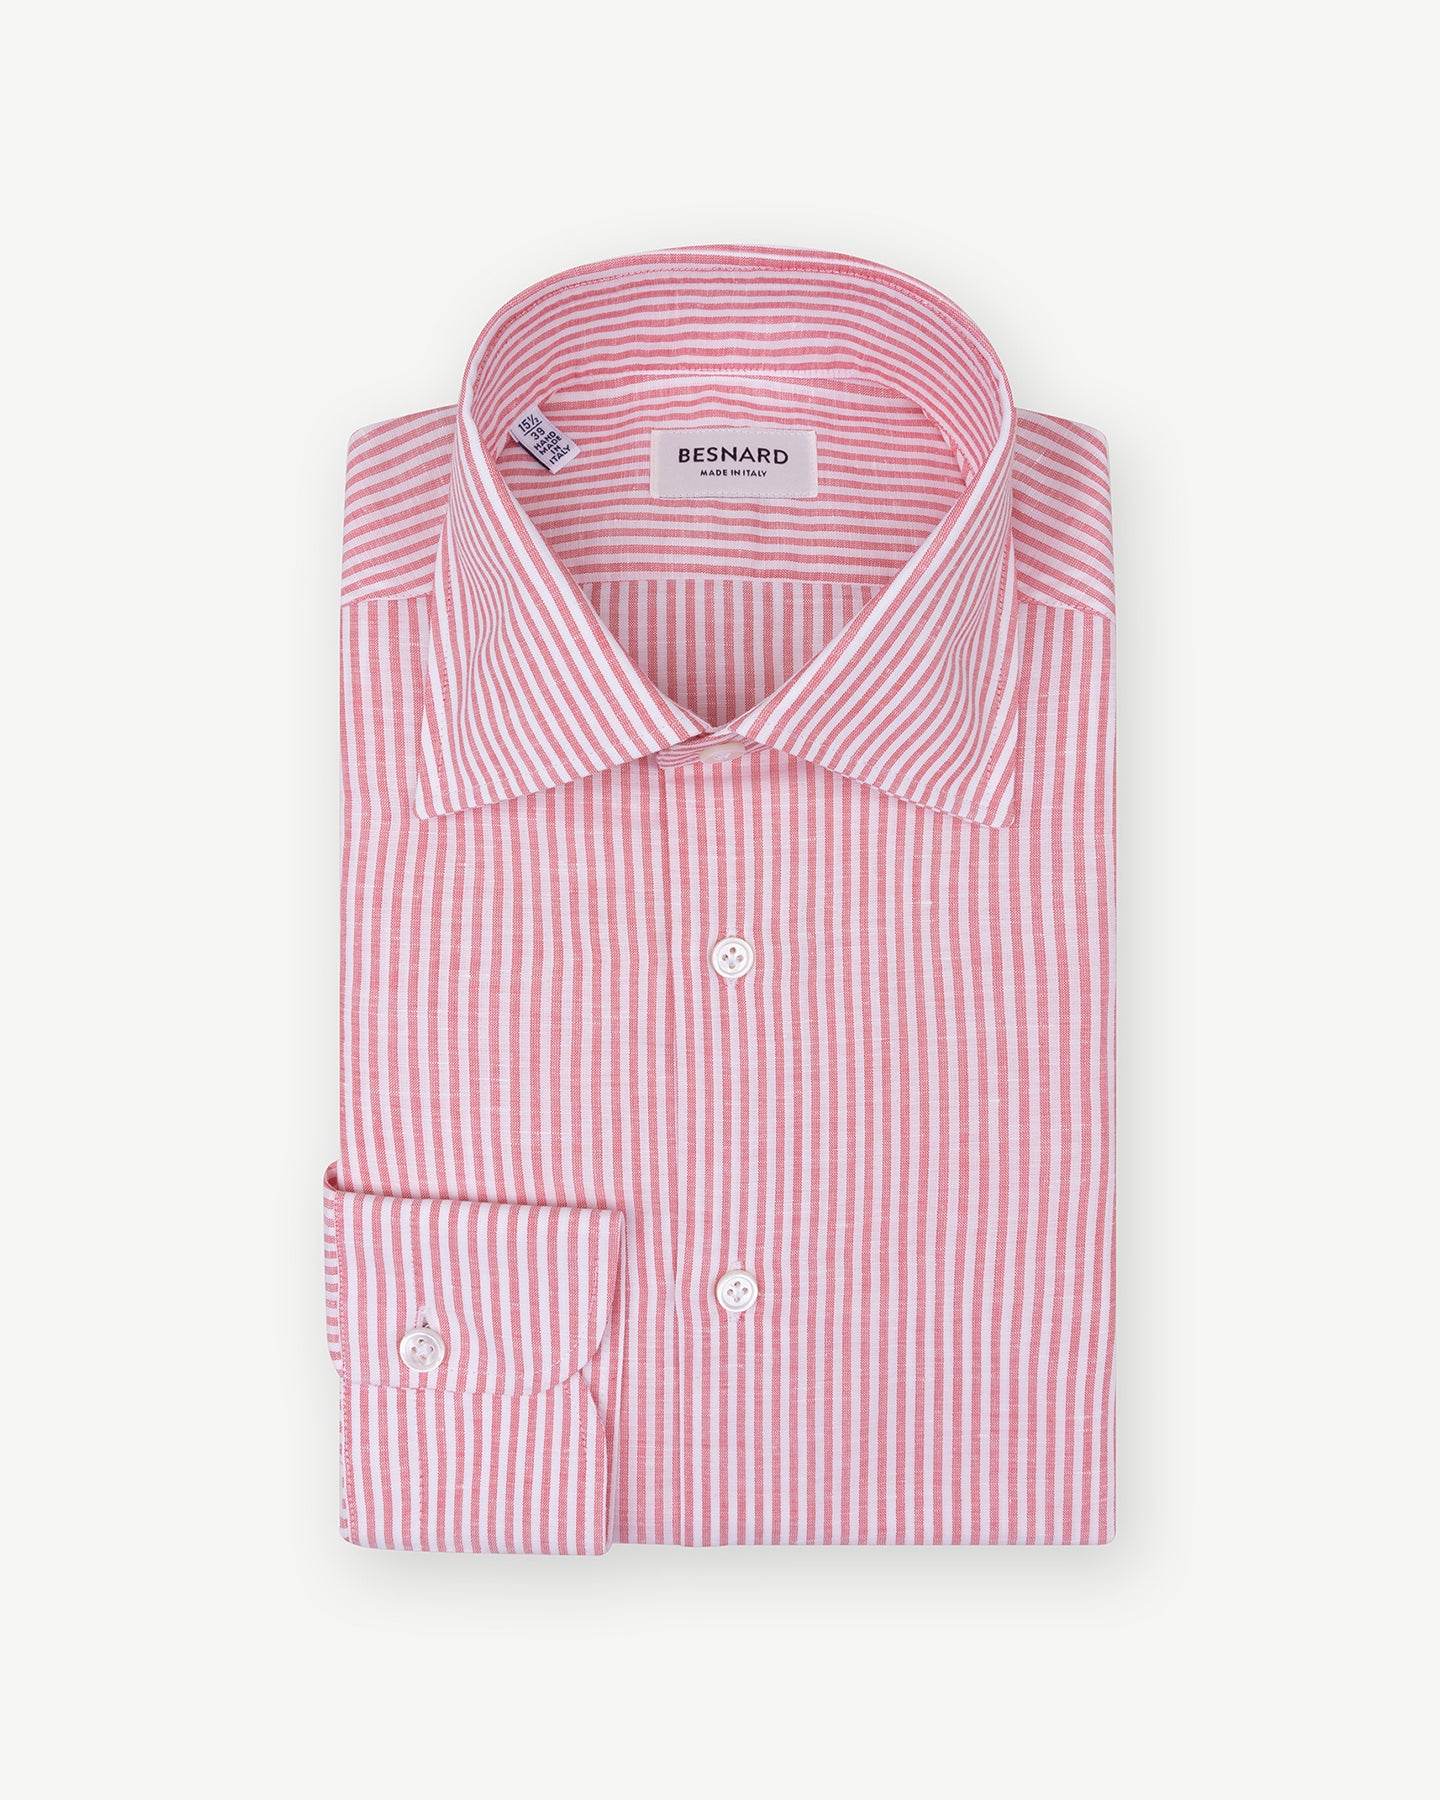 Red bengal stripe cotton linen dress shirt